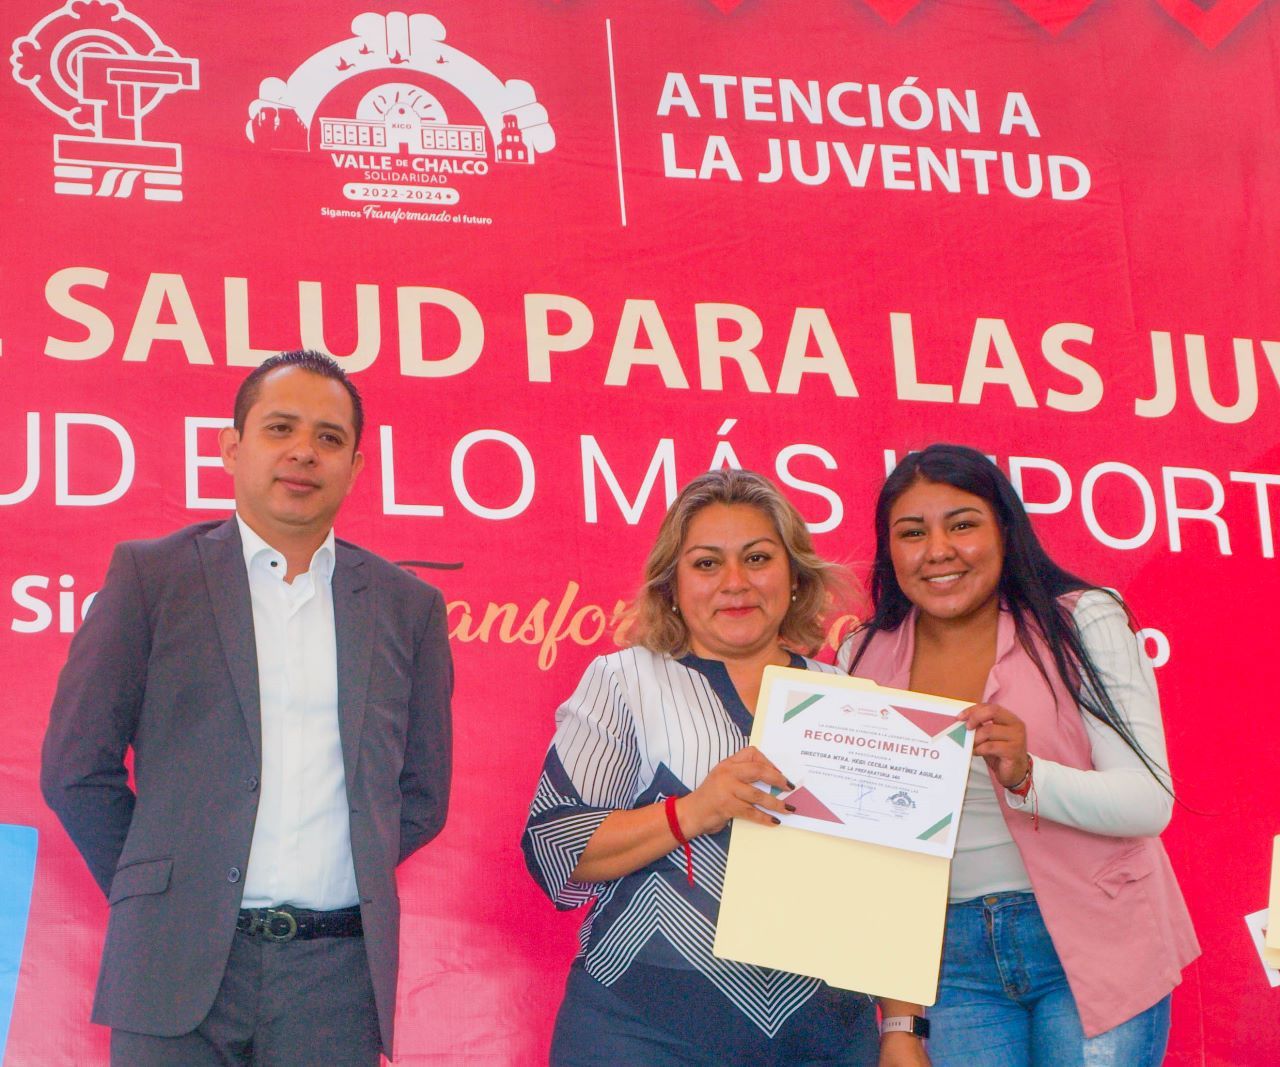 Alcalde organiza JORNADA DE SALUD PARA LAS JUVENTUDES